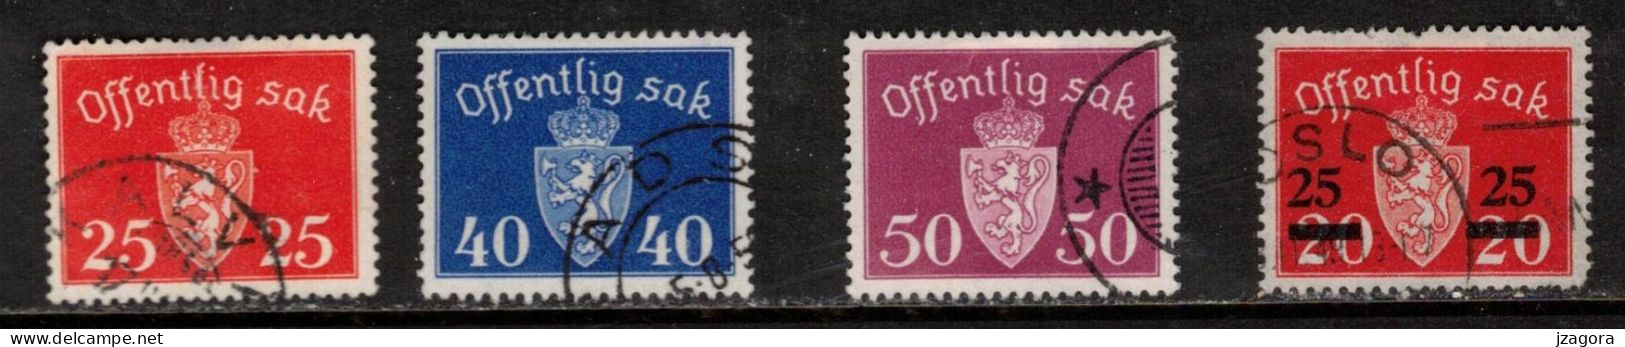 NORWAY NORGE NORWEGEN NORVÈGE 1946 1947 1949 MI 55 57 58 60 DIENSTMARKEN OFFICIALS OFF.SAK.  COAT OF ARMS STAATSWAPPEN - Dienstzegels